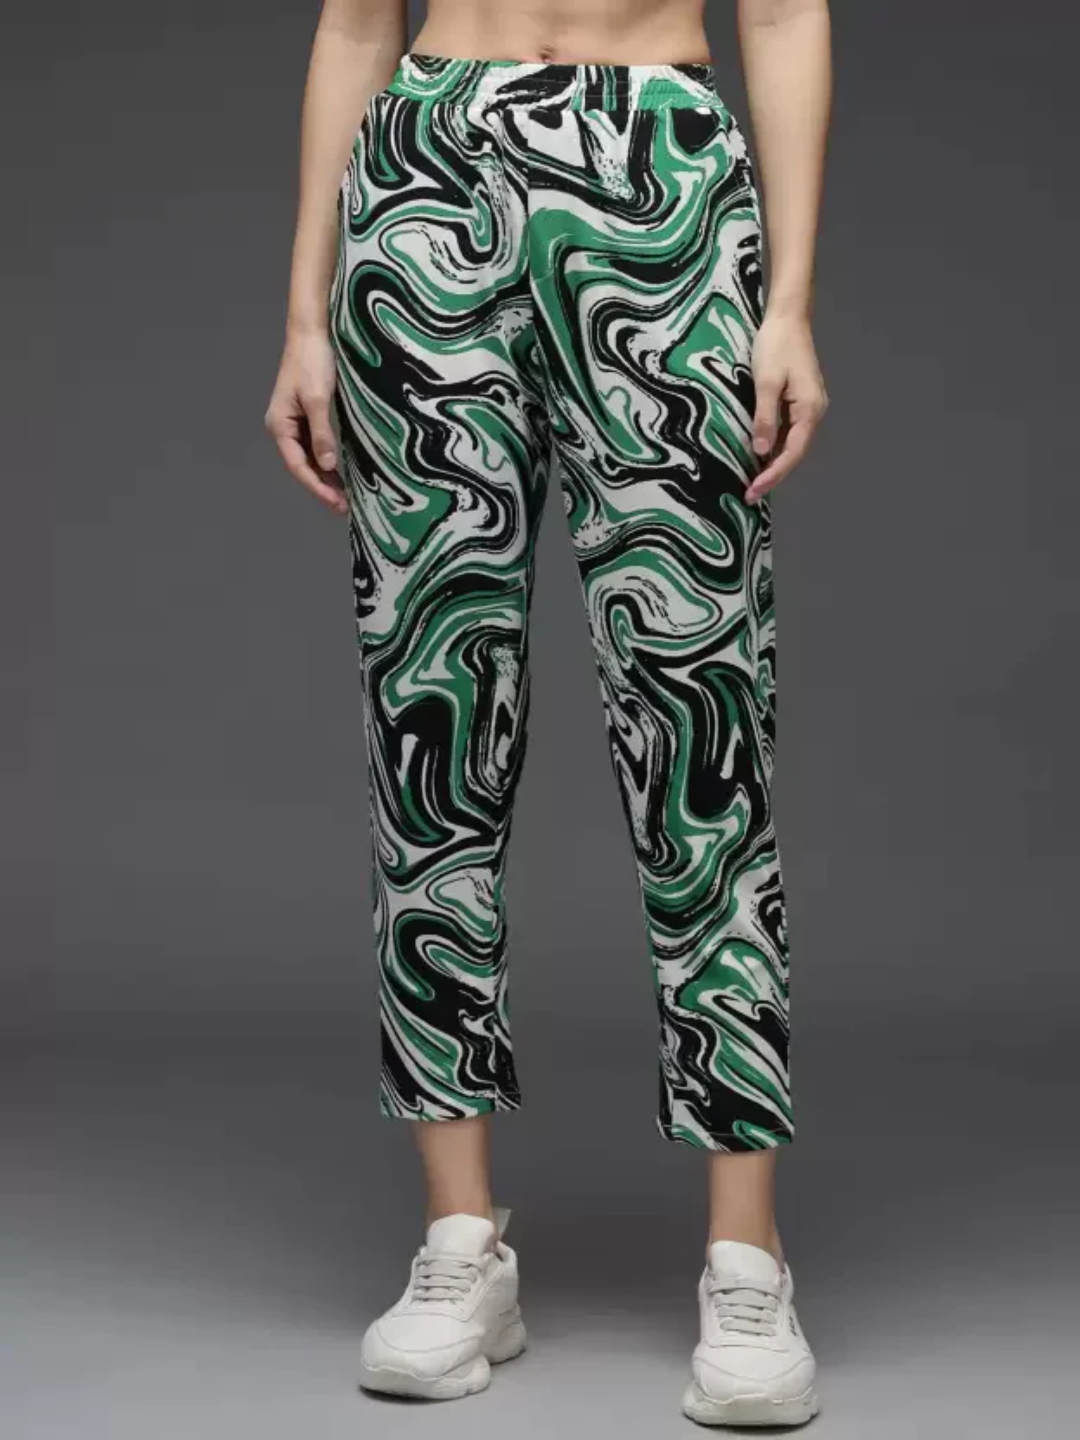 DARZI Regular Fit Women Multicolor Trousers - Buy DARZI Regular